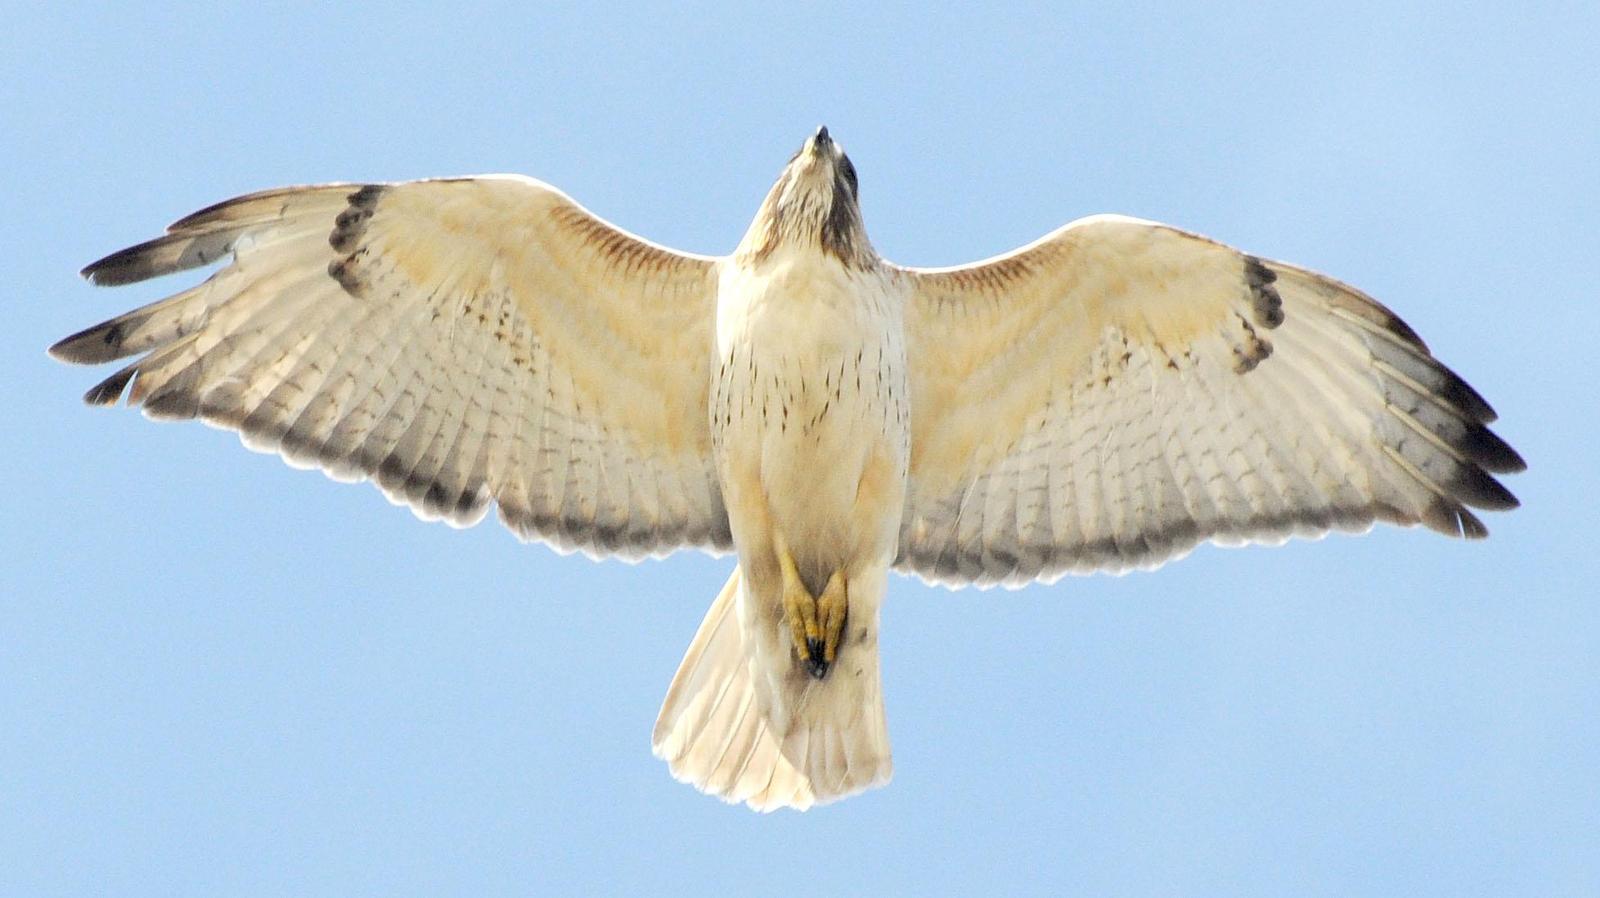 Red-tailed Hawk Photo by Mark Rozmarynowycz